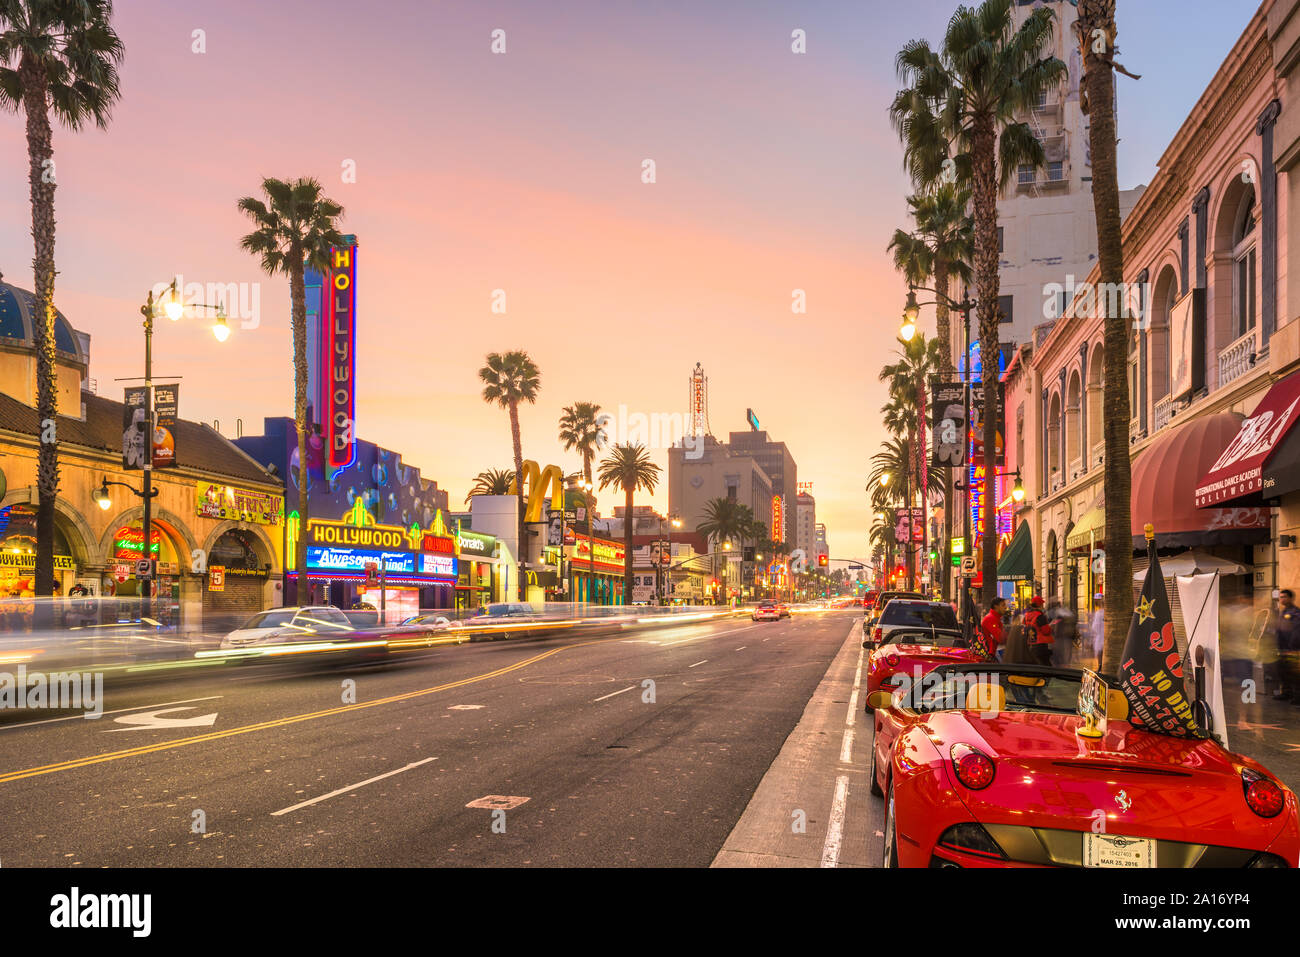 LOS ANGELES, Kalifornien - 1. MÄRZ 2016: der Verkehr auf dem Hollywood Boulevard der Dämmerung. Das Theaterviertel ist berühmte Touristenattraktion. Stockfoto